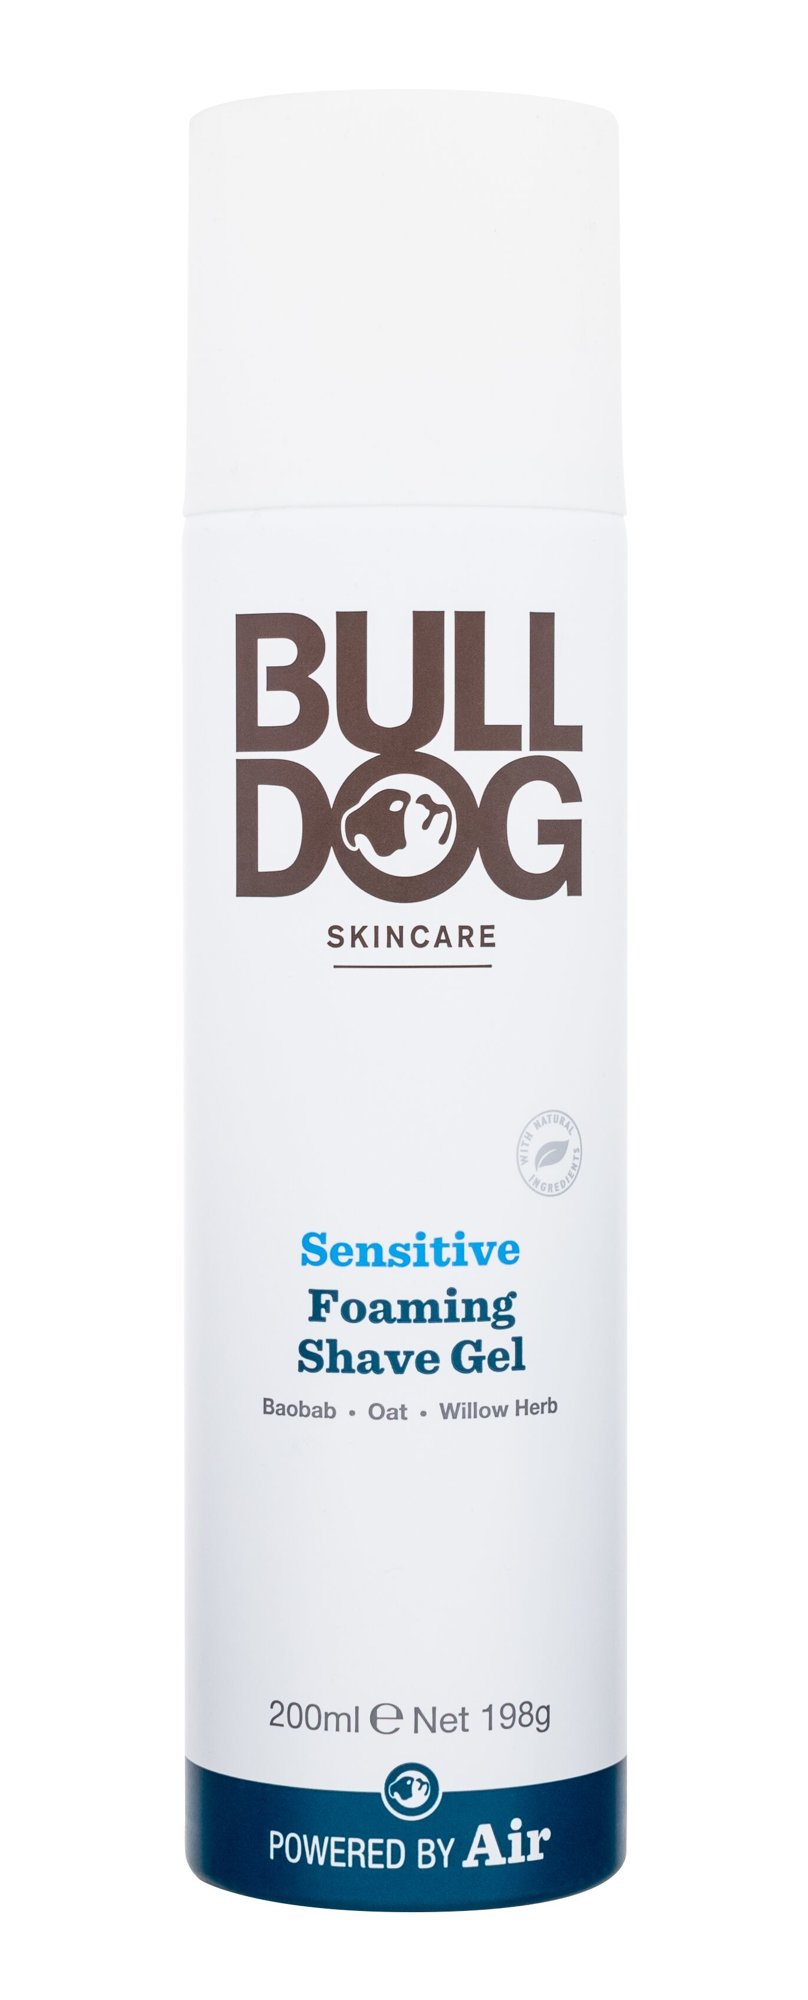 Bulldog Sensitive Foaming Shave Gel skutimosi gelis